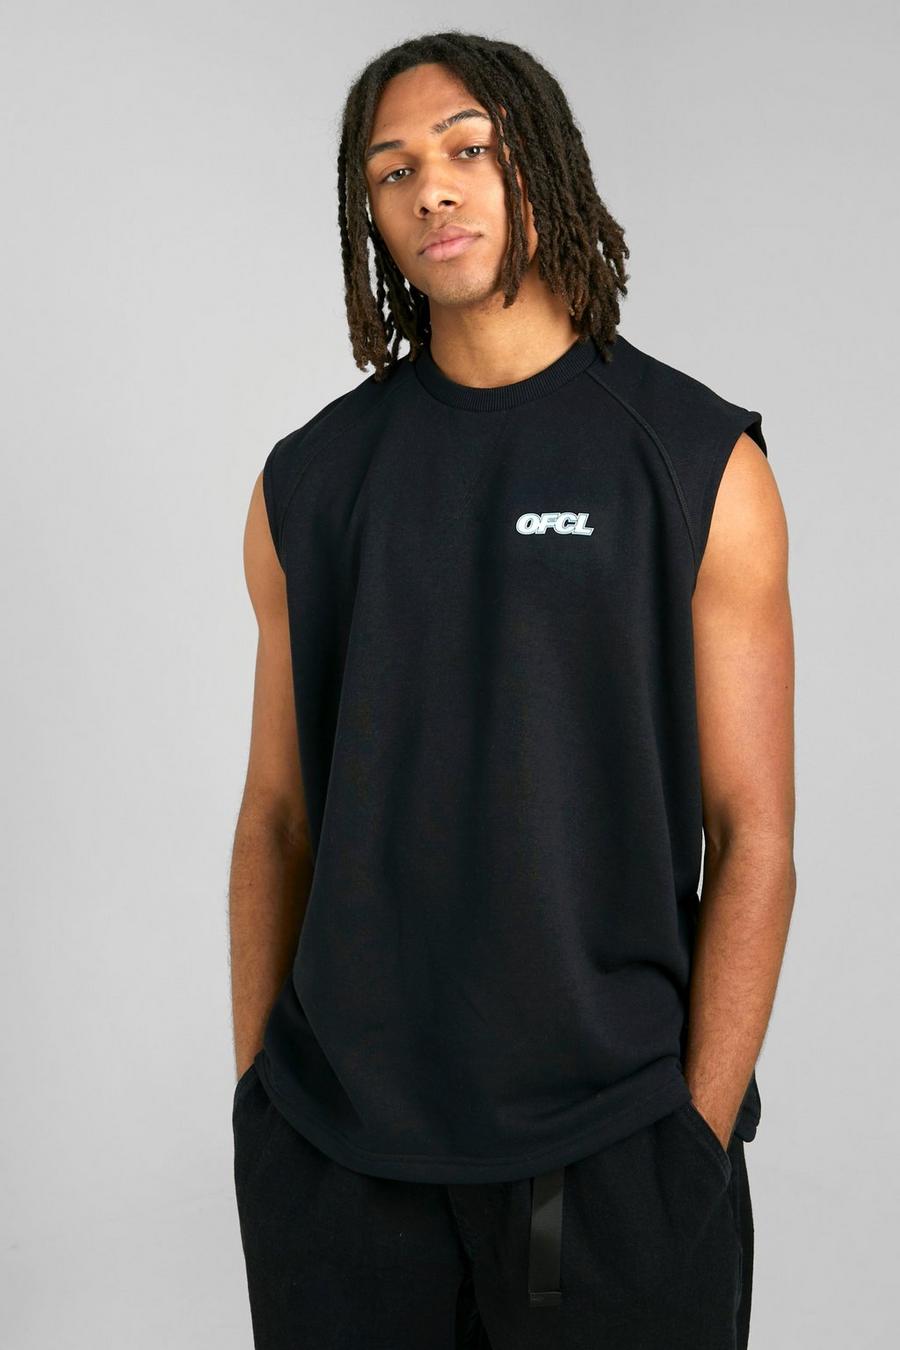 Black Oversized Ofcl Sleeveless Sweatshirt image number 1